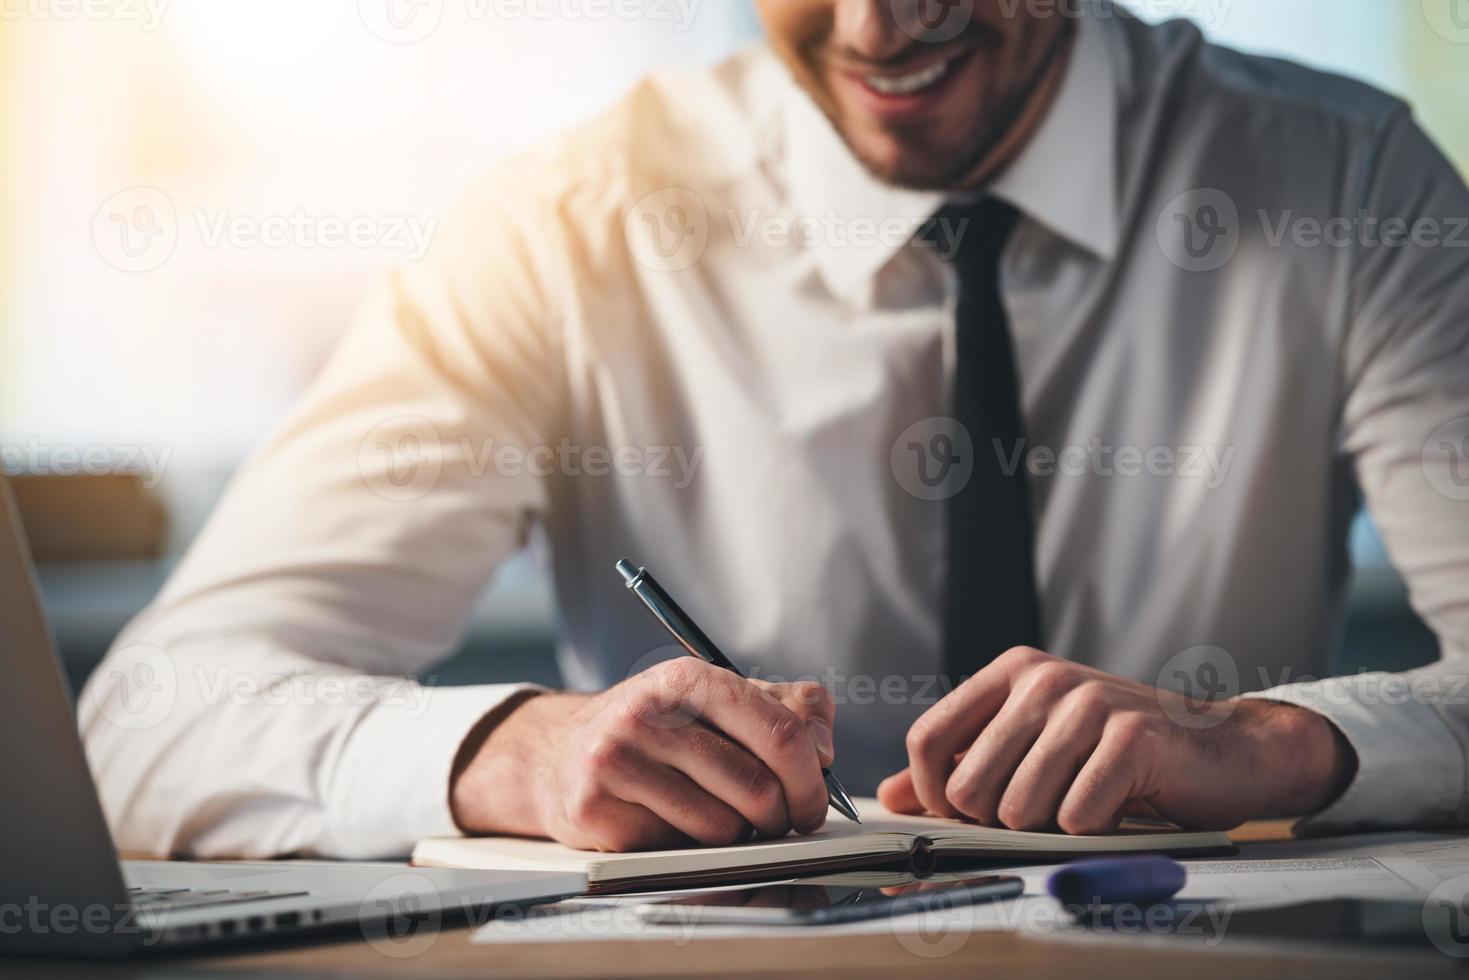 mit Freude arbeiten. Nahaufnahme eines jungen Mannes, der mit einem Lächeln in sein Notizbuch schreibt, während er an seinem Arbeitsplatz sitzt foto